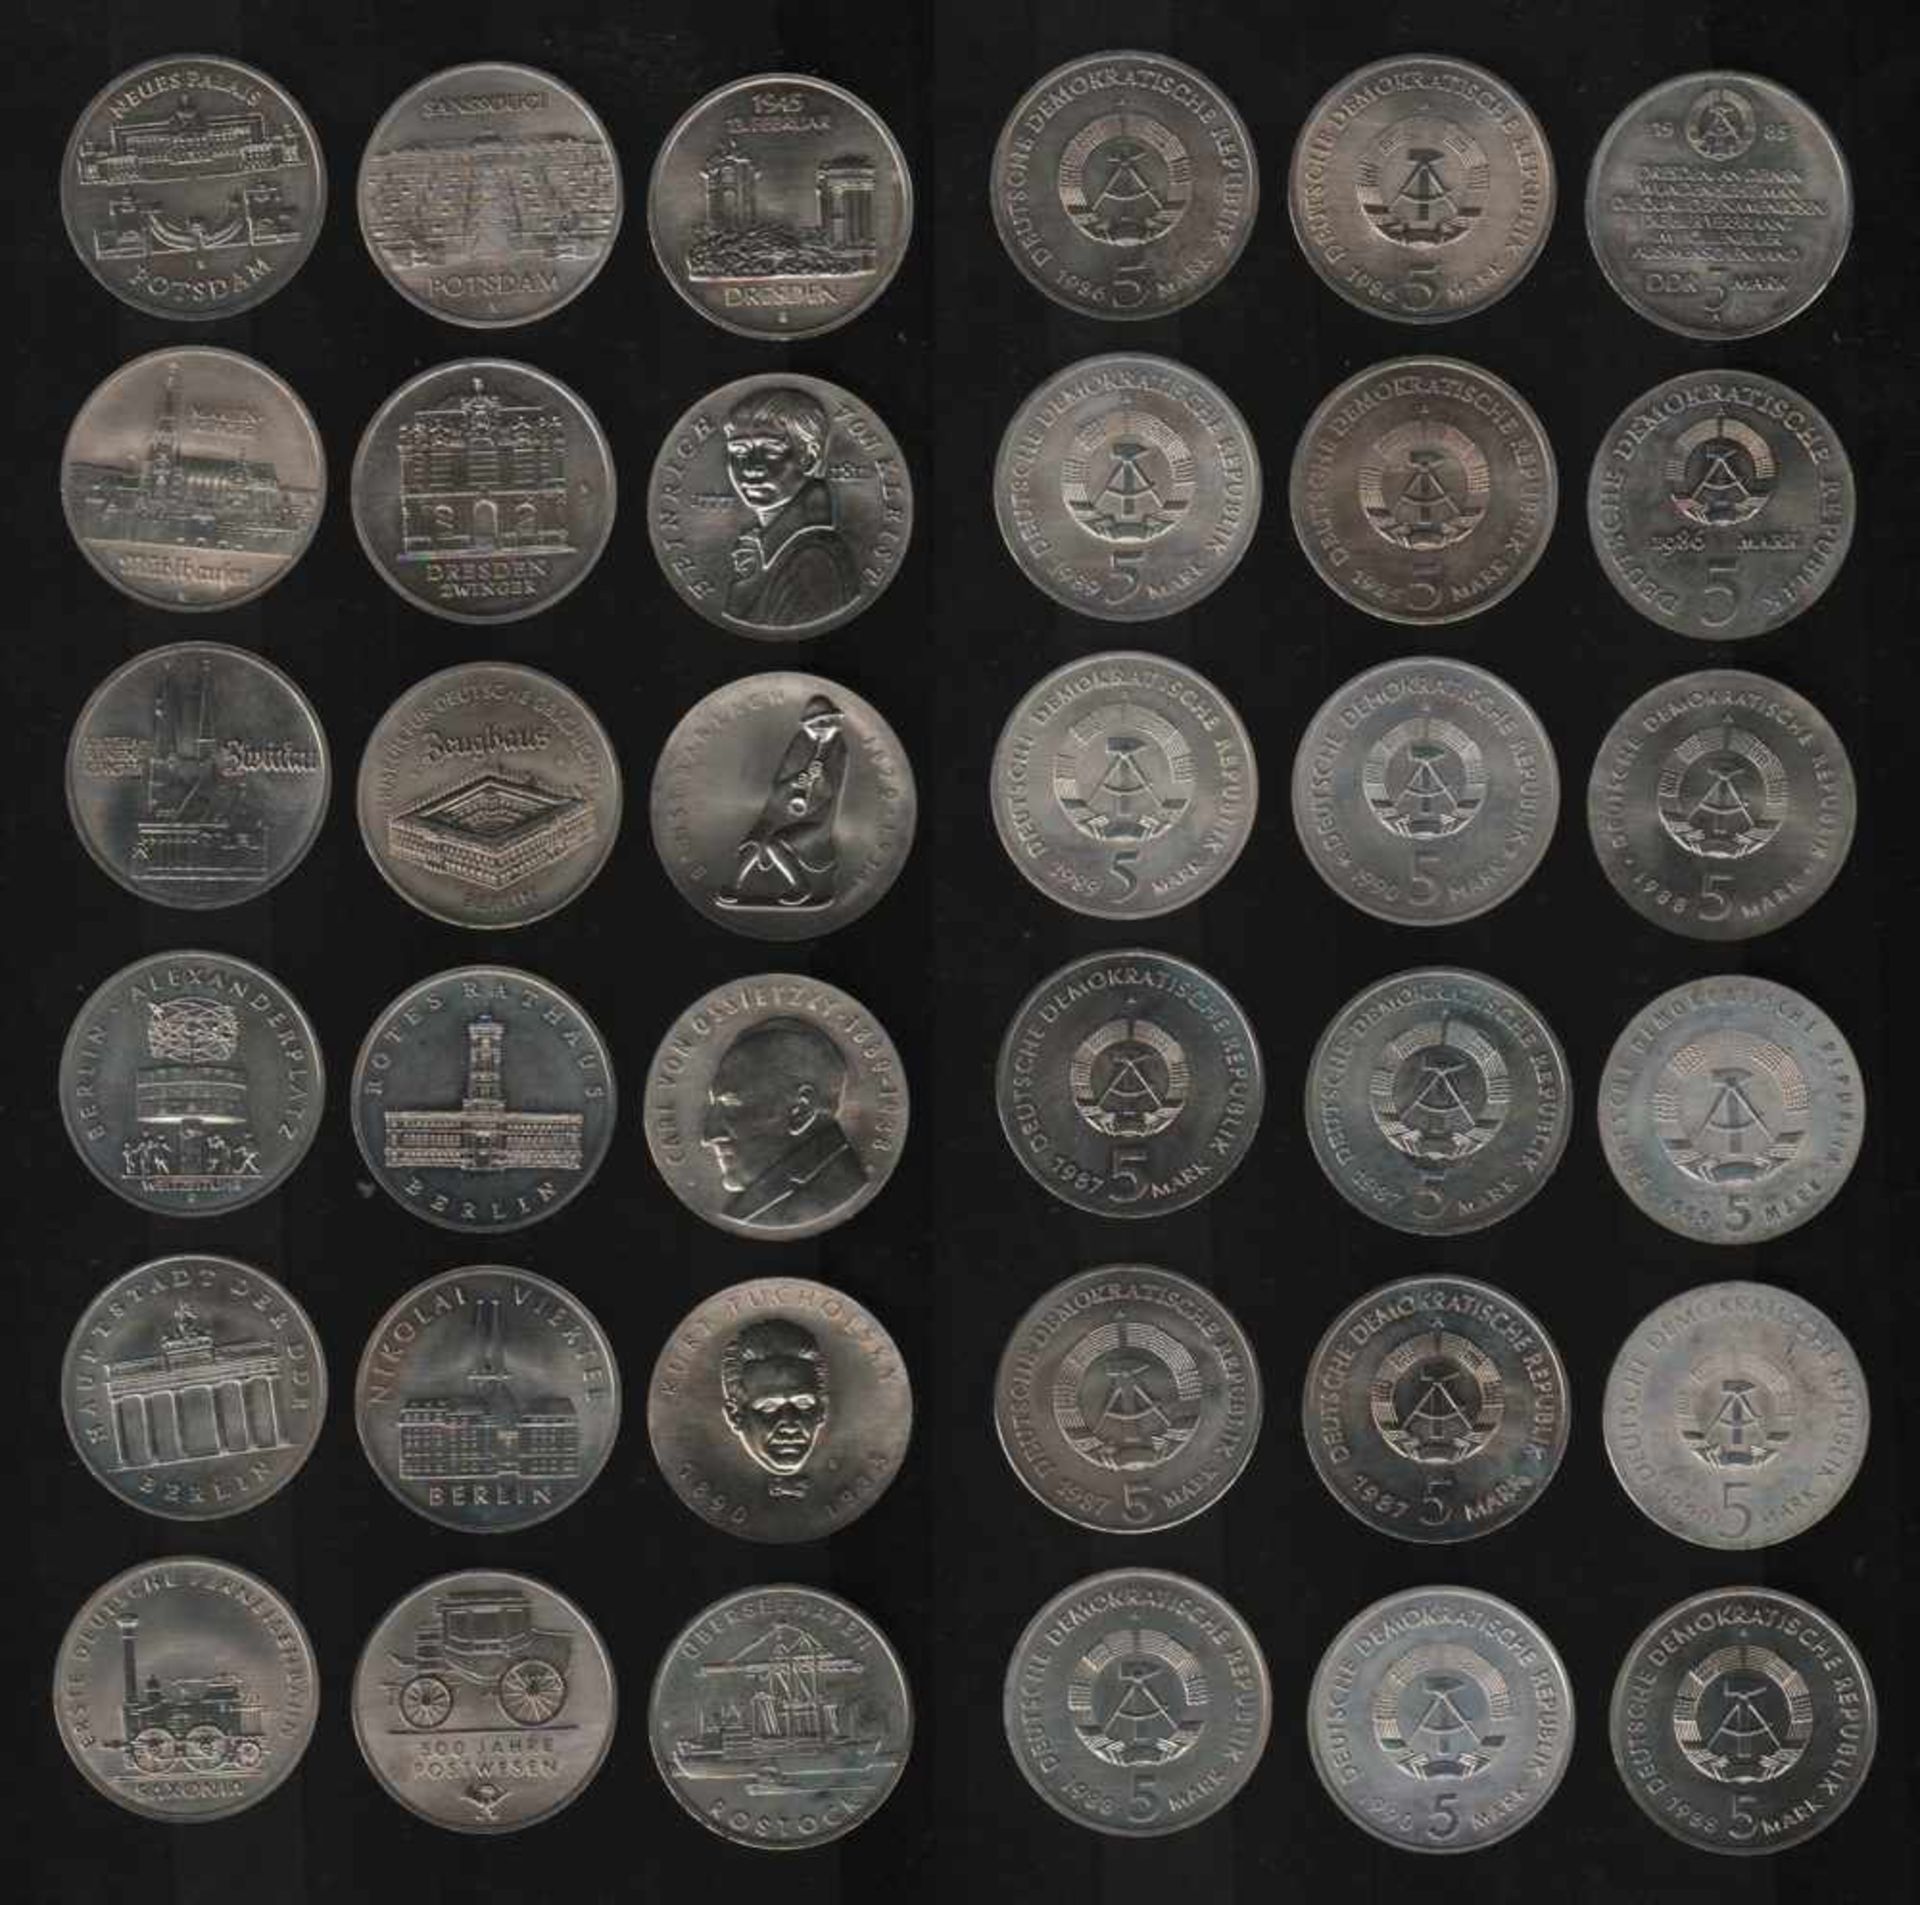 DDR. 18 Münzen à 5 Mark.Kupfer - Nickel - Zink. Gedenkmünzen. VEB Münze der DDR Berlin 1985 -